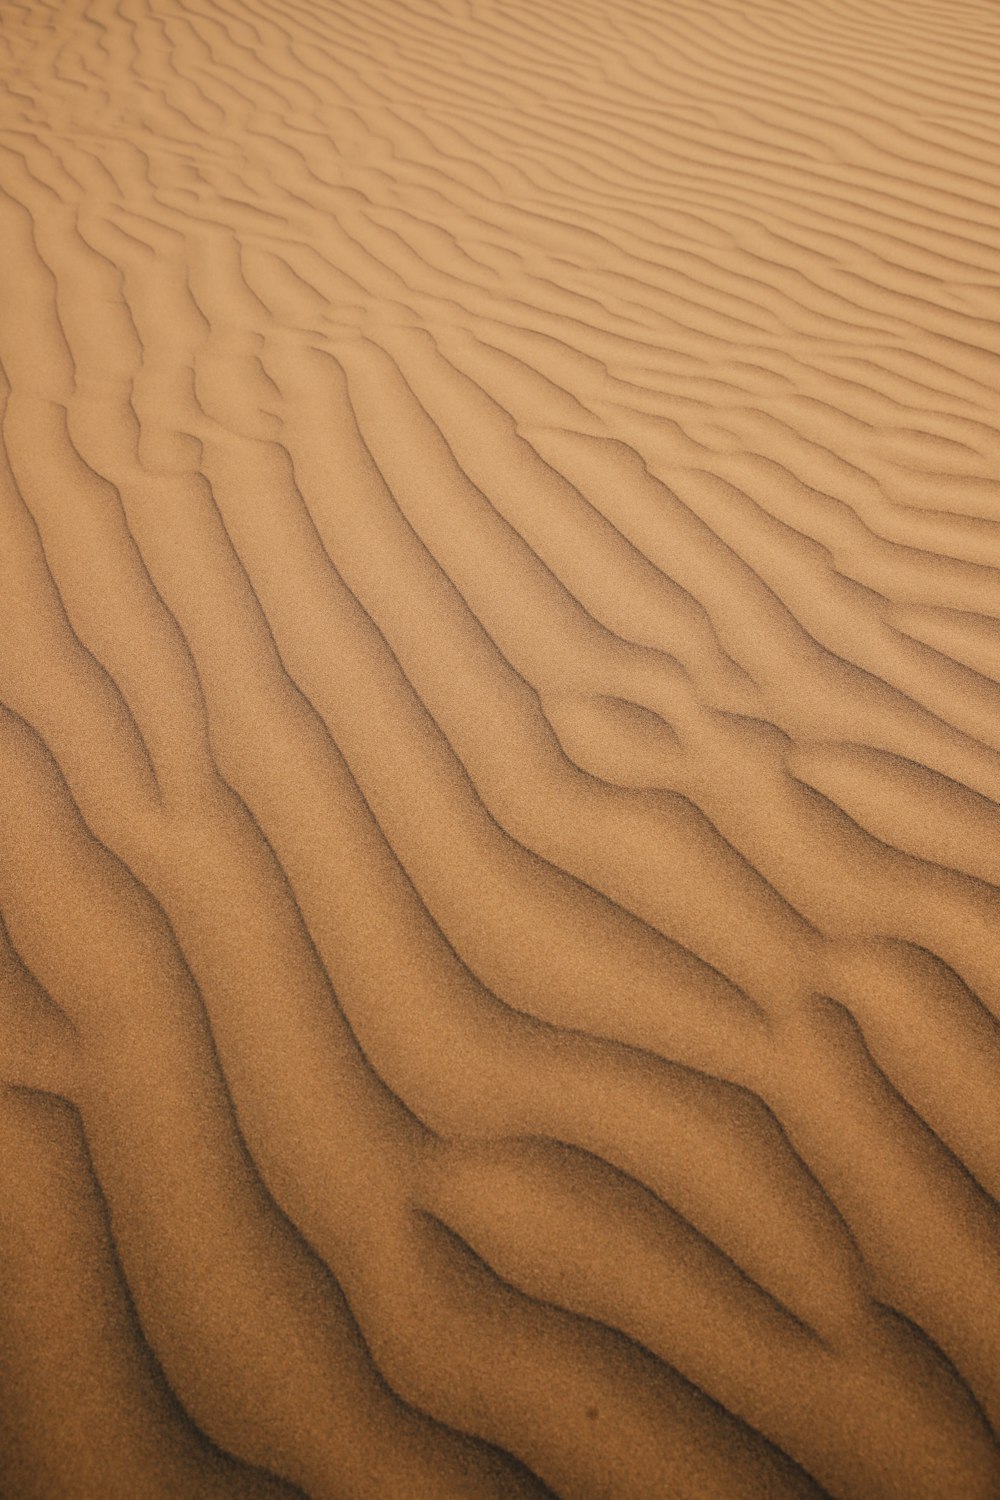 砂の中に線が生えた砂地